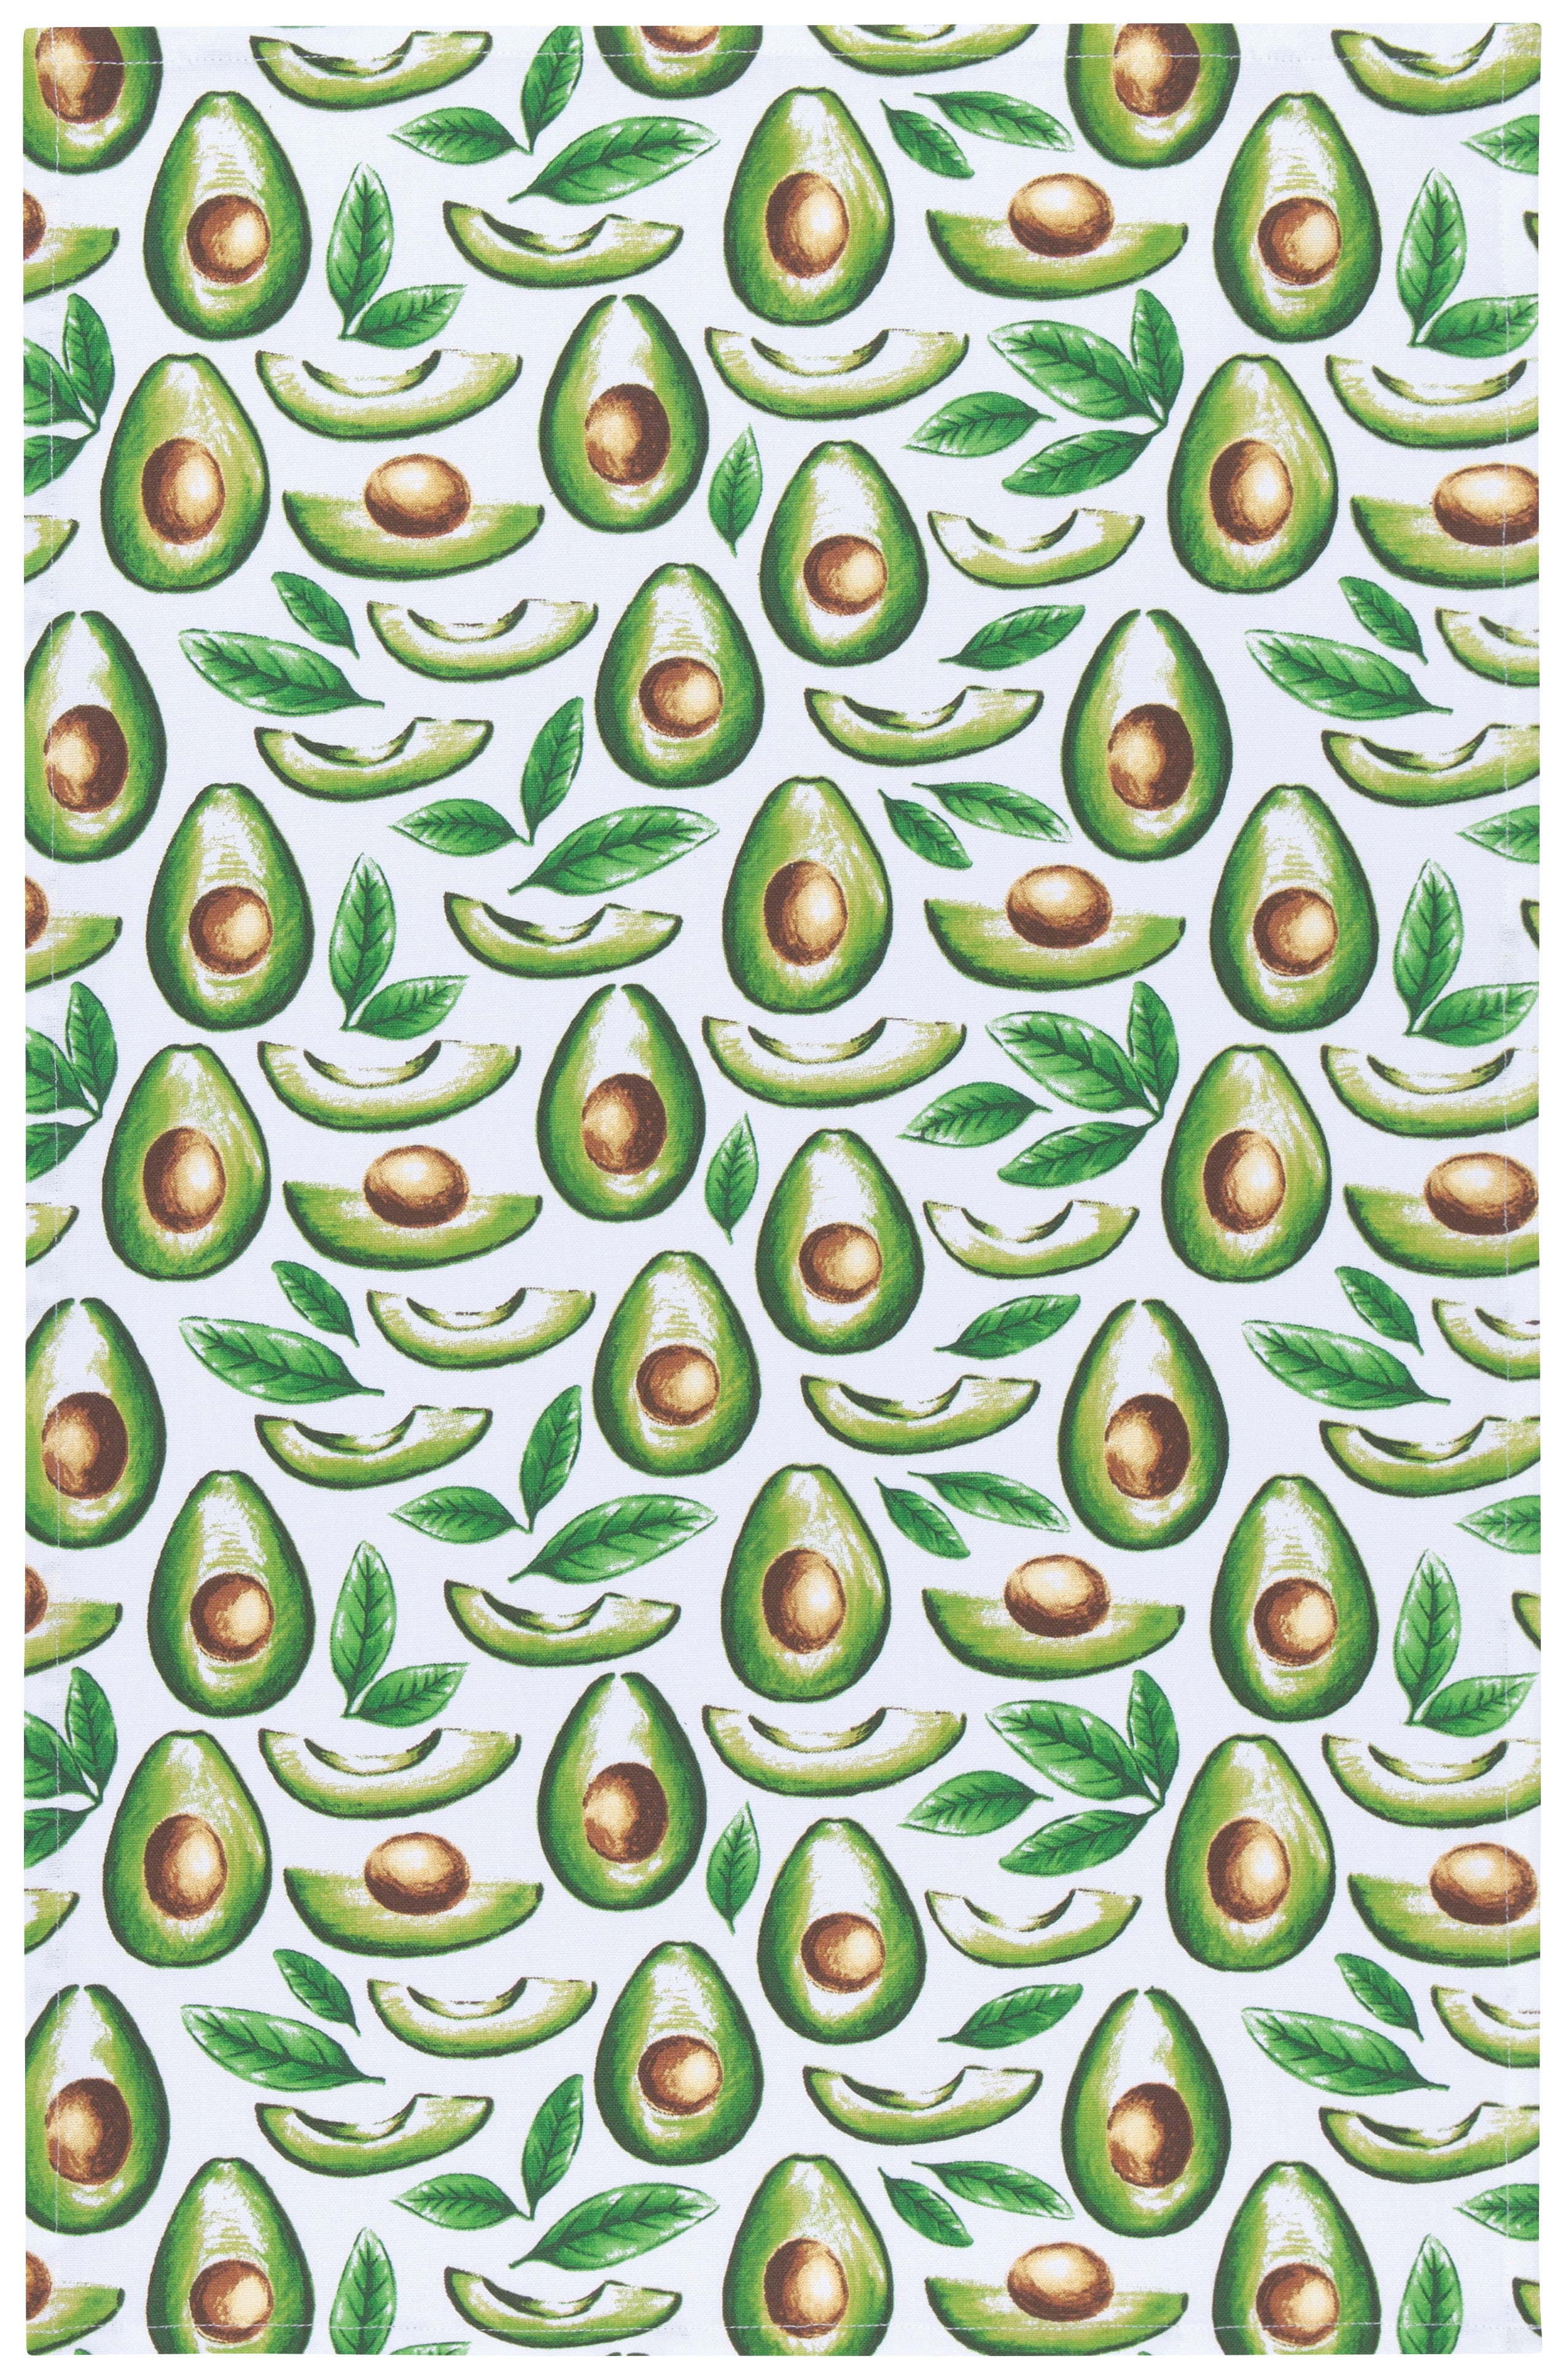 Avocados Dish Towel | Now Designs Danica - Oscar & Libby's